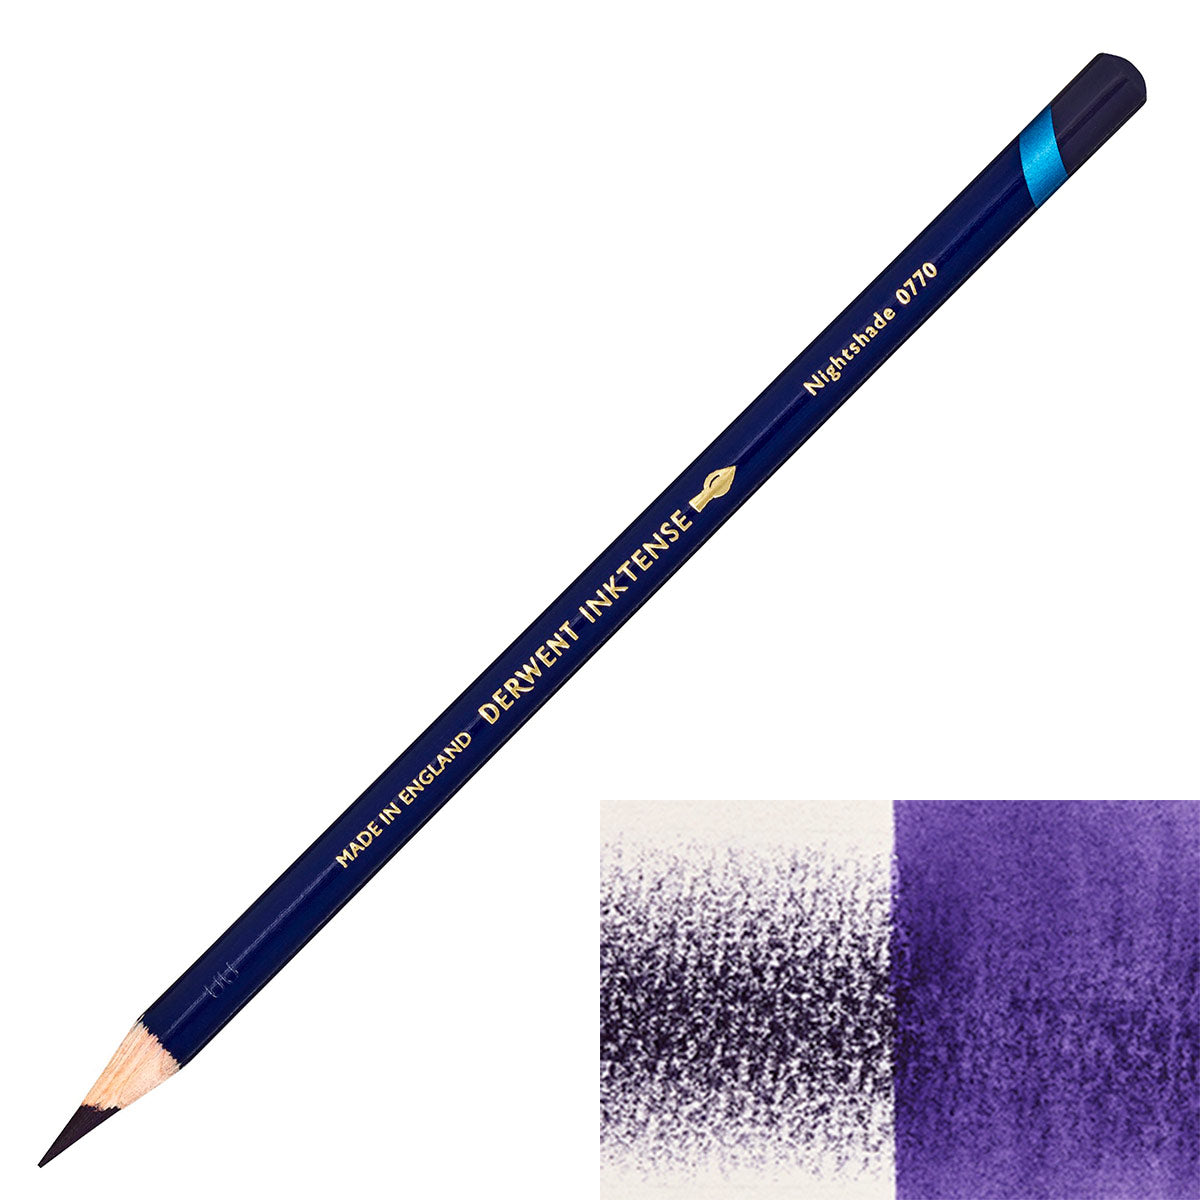 Derwent - Inktense Pencil - Nightshade 0770